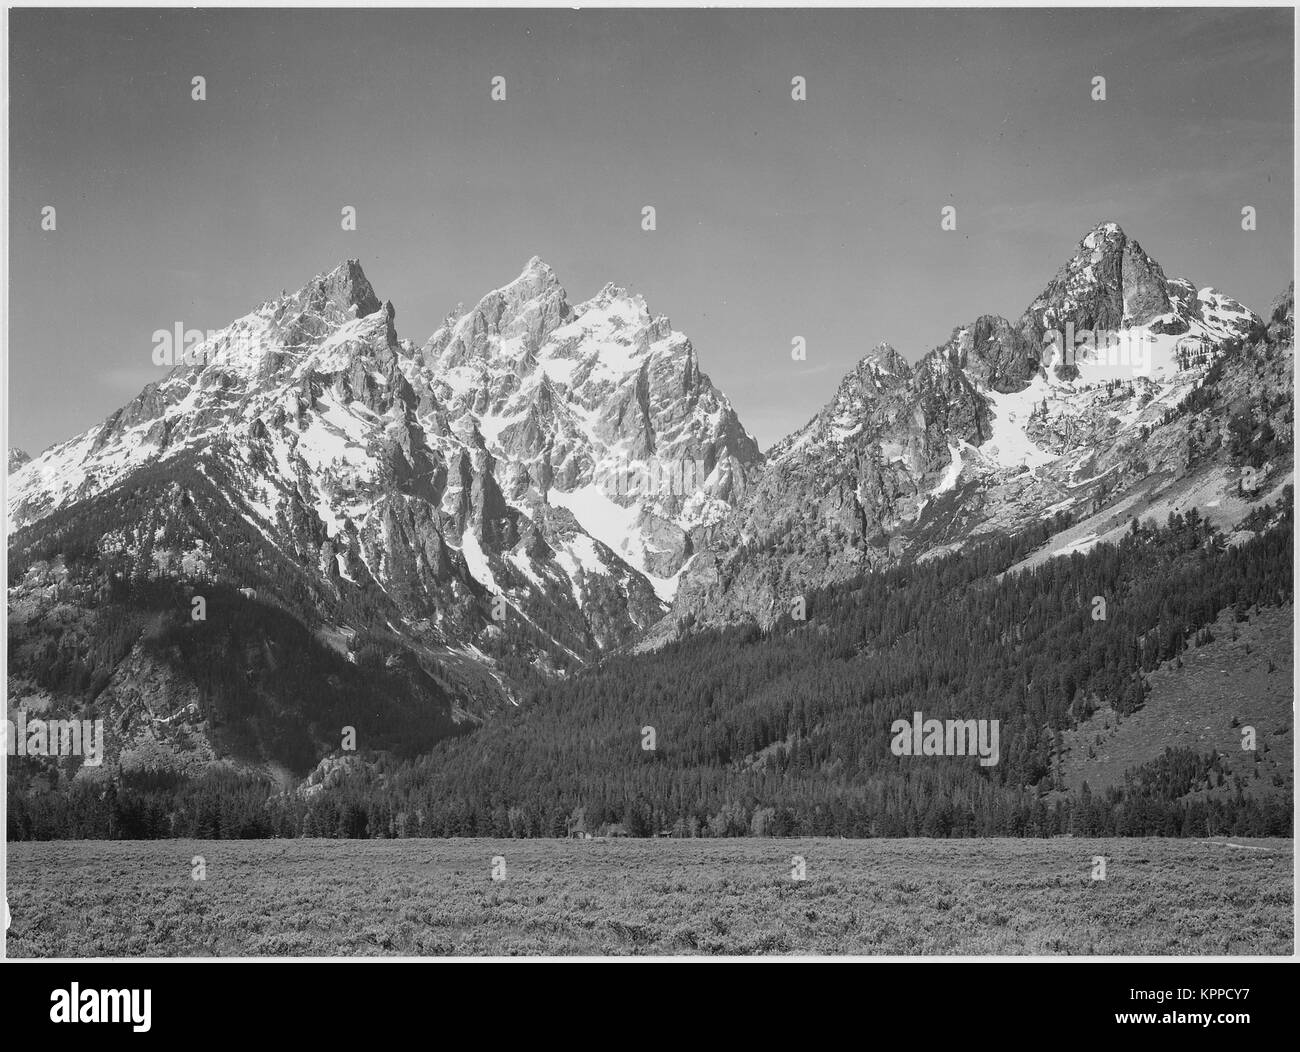 Grasbewachsene senke Baum Berg Seite und schneebedeckten Gipfeln Grand Teton National Park Wyoming, Geologie, Geologische. 1933 - 1942 Stockfoto